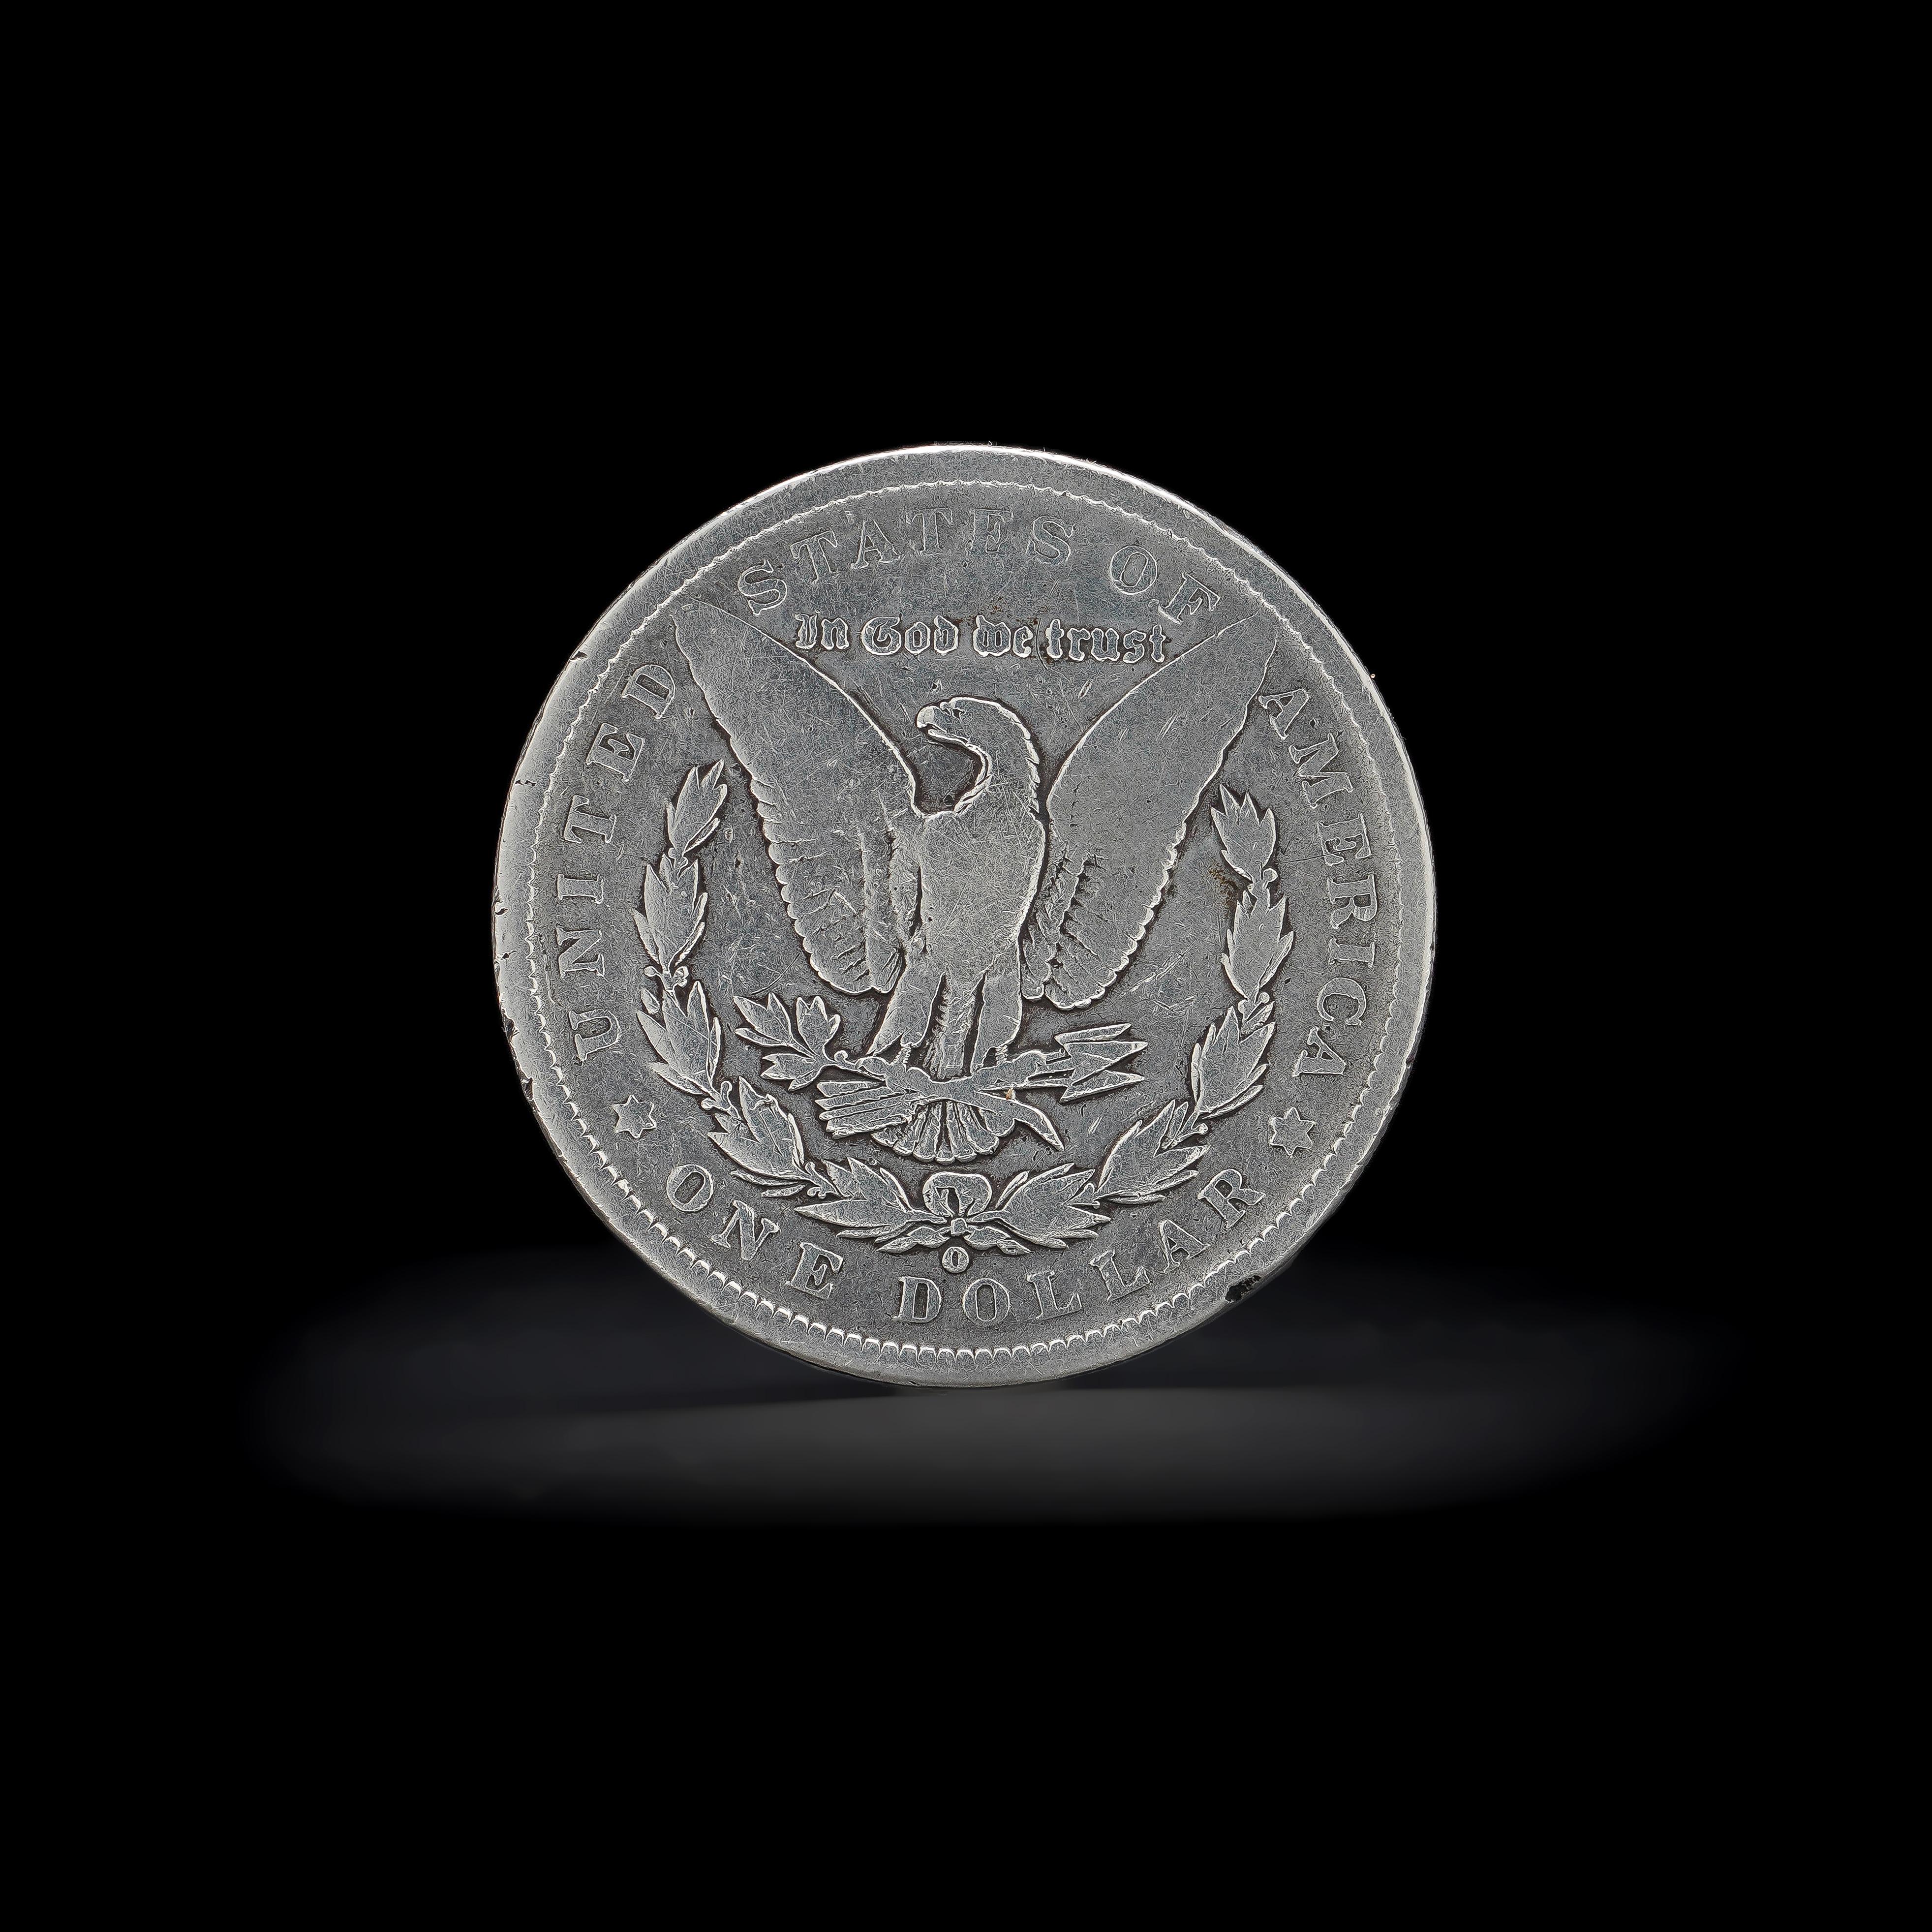 Antiker 1891 O Morgan Dollar.
Feingehalt Silber: 900/1000
Hergestellt in den USA, 1891
Münze: New Orleans
Wird mit einem Reinheitszertifikat für Silber geliefert.  

1878 ist das erste Jahr der beliebten Morgan-Dollar-Serie. 

Der Morgan Dollar ist